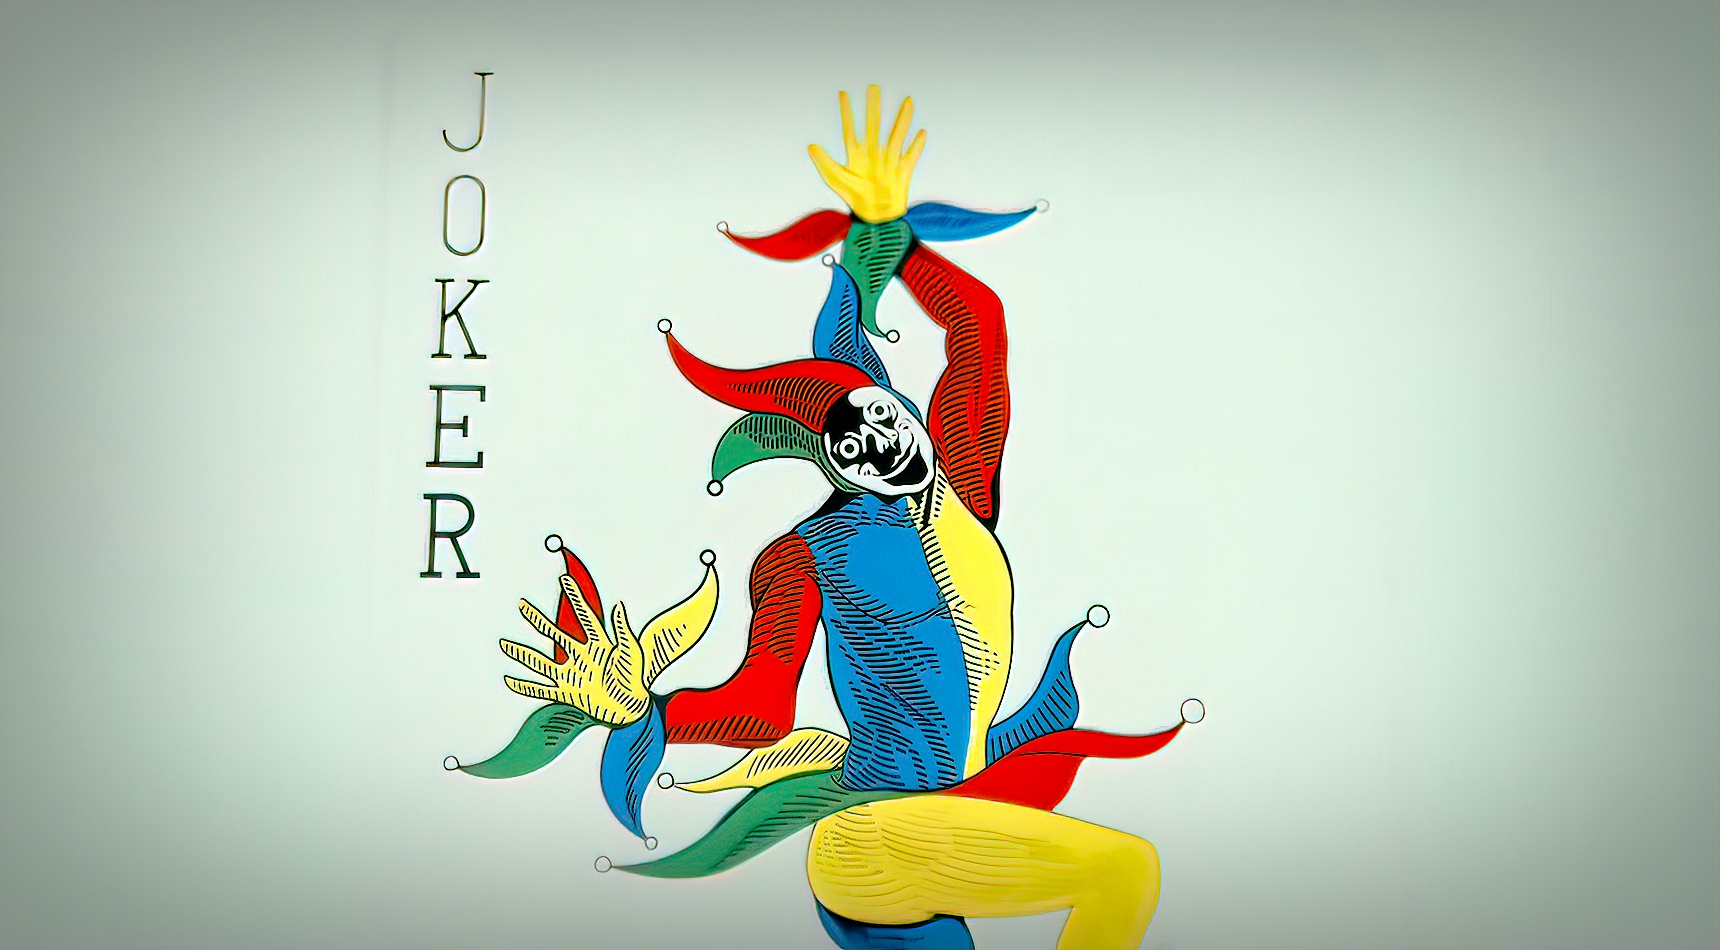 Dlaczego w talii kart znajduje się joker?